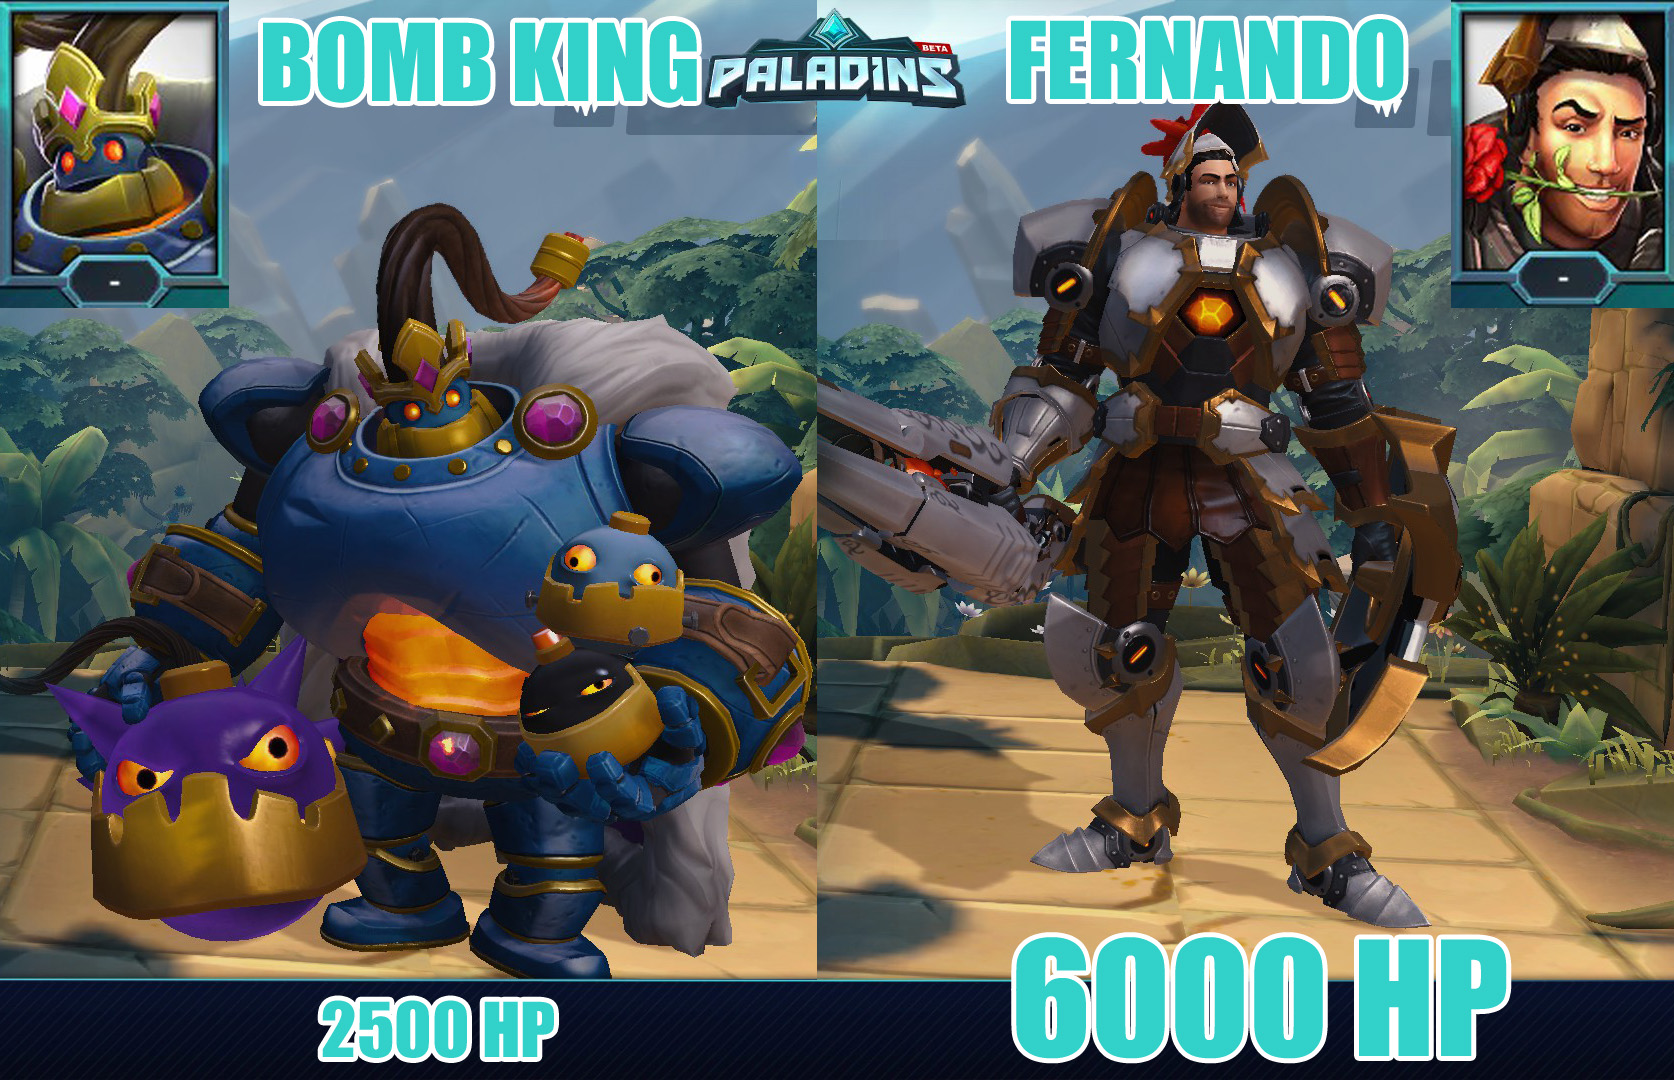 Image de Fernando et Bomb King et de leur portrait